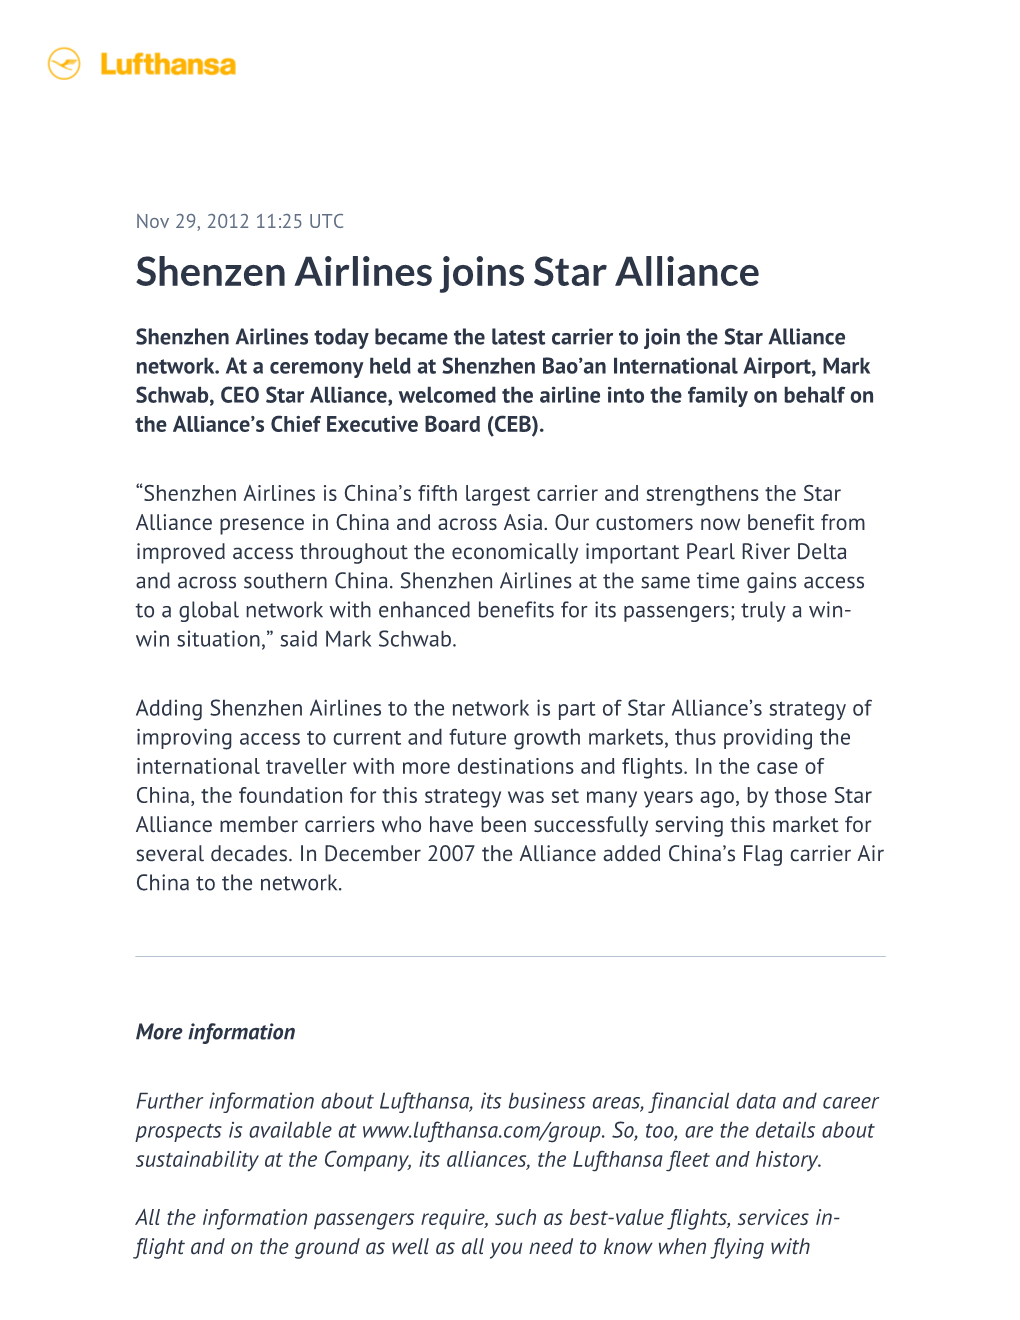 Shenzen Airlines Joins Star Alliance